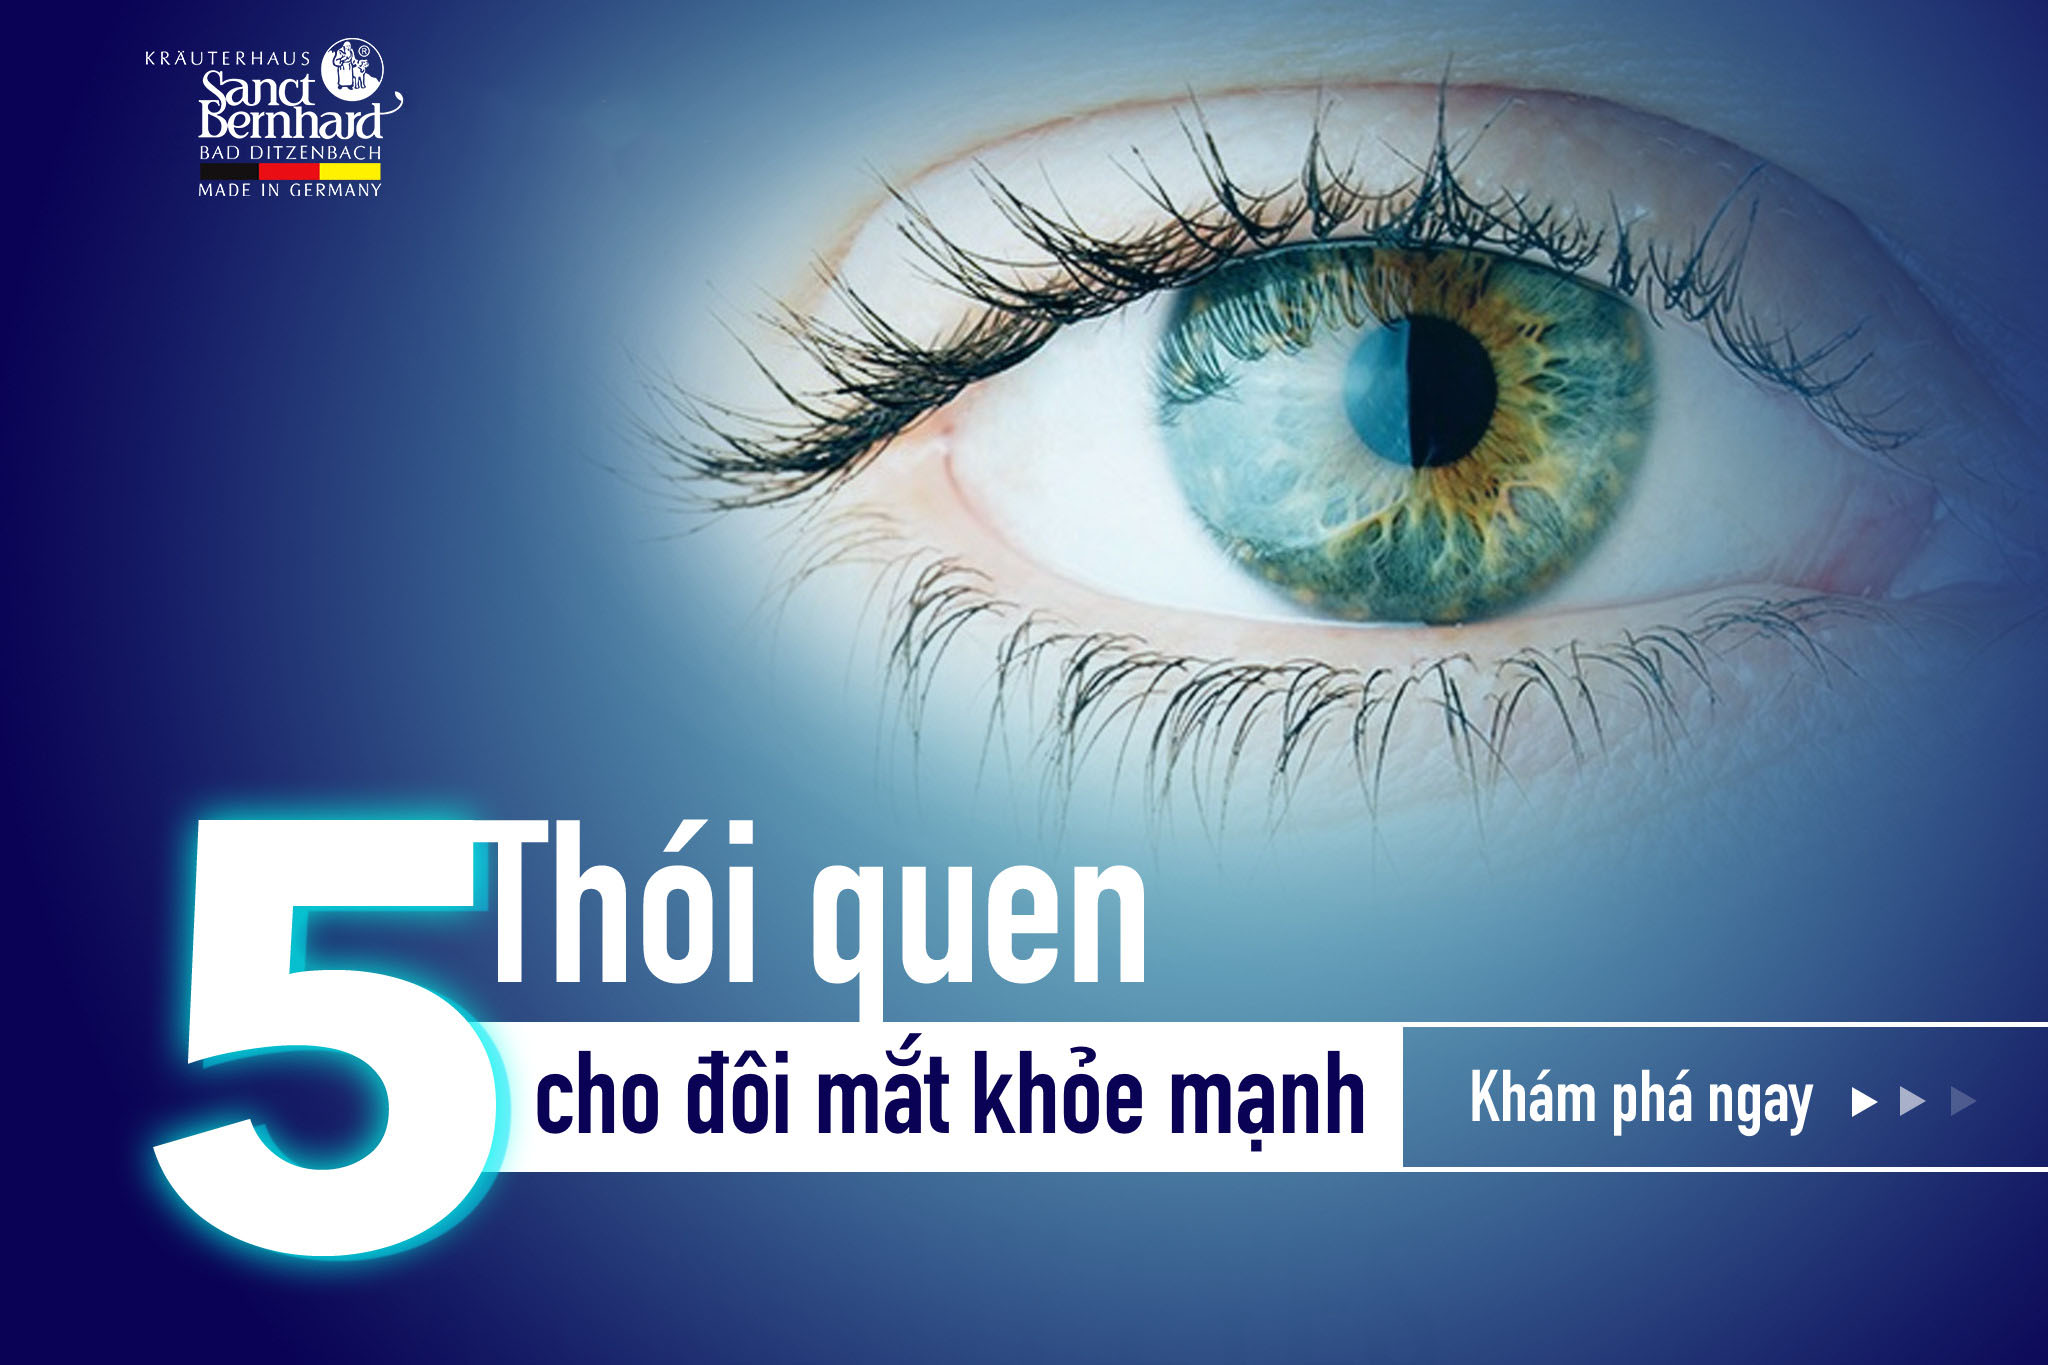 5-thoi-quen-giup-doi-mat-khoe-manh